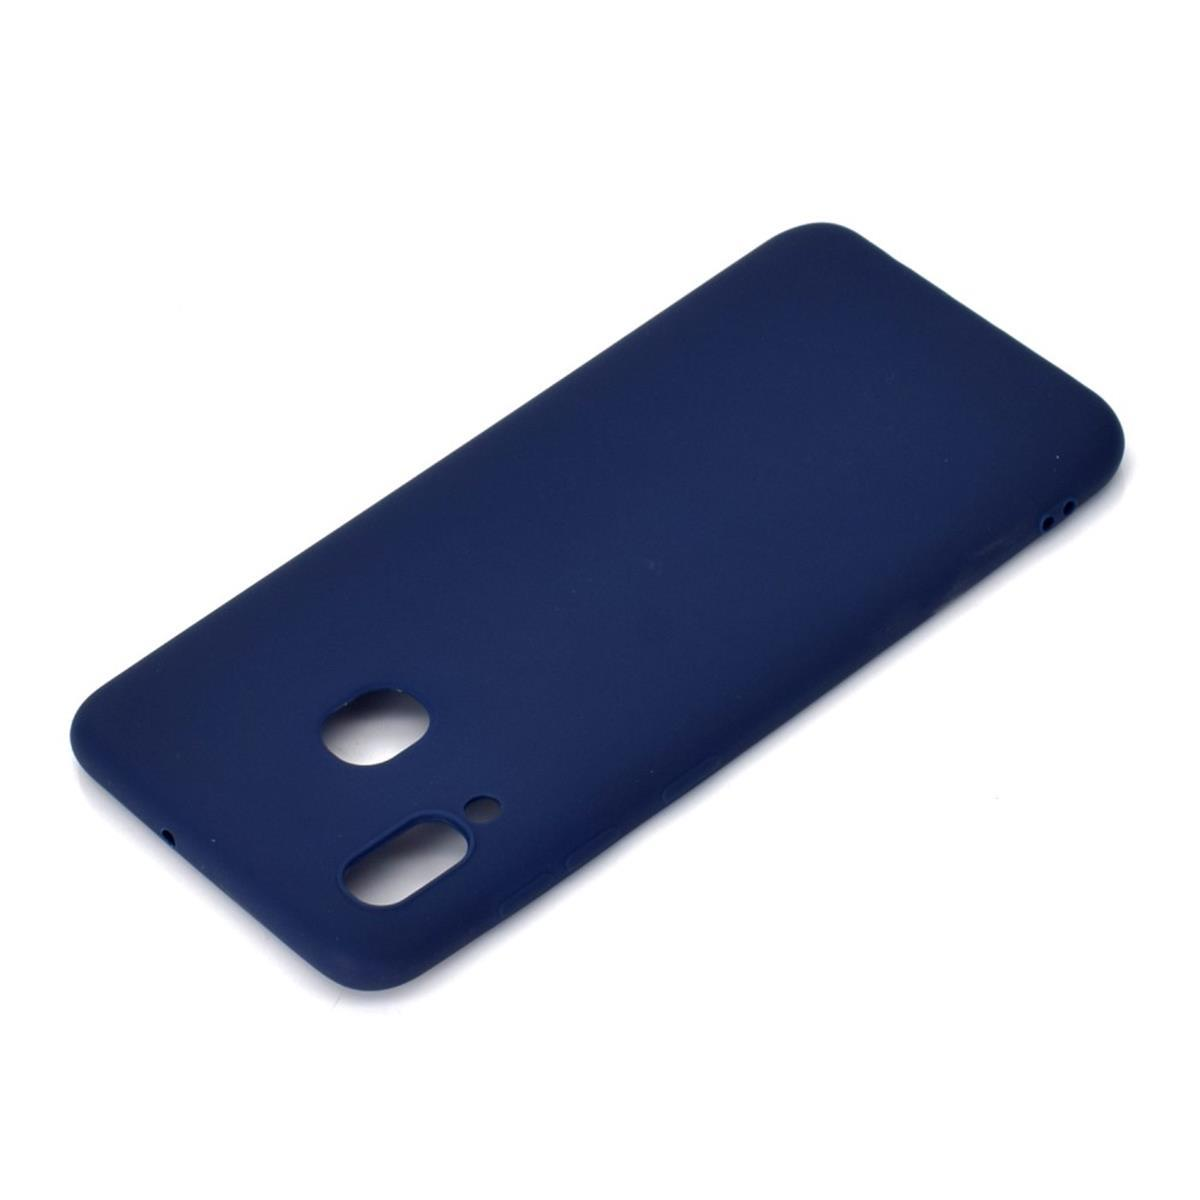 COVERKINGZ Handycase aus Silikon, Samsung, A30, Galaxy Blau Backcover